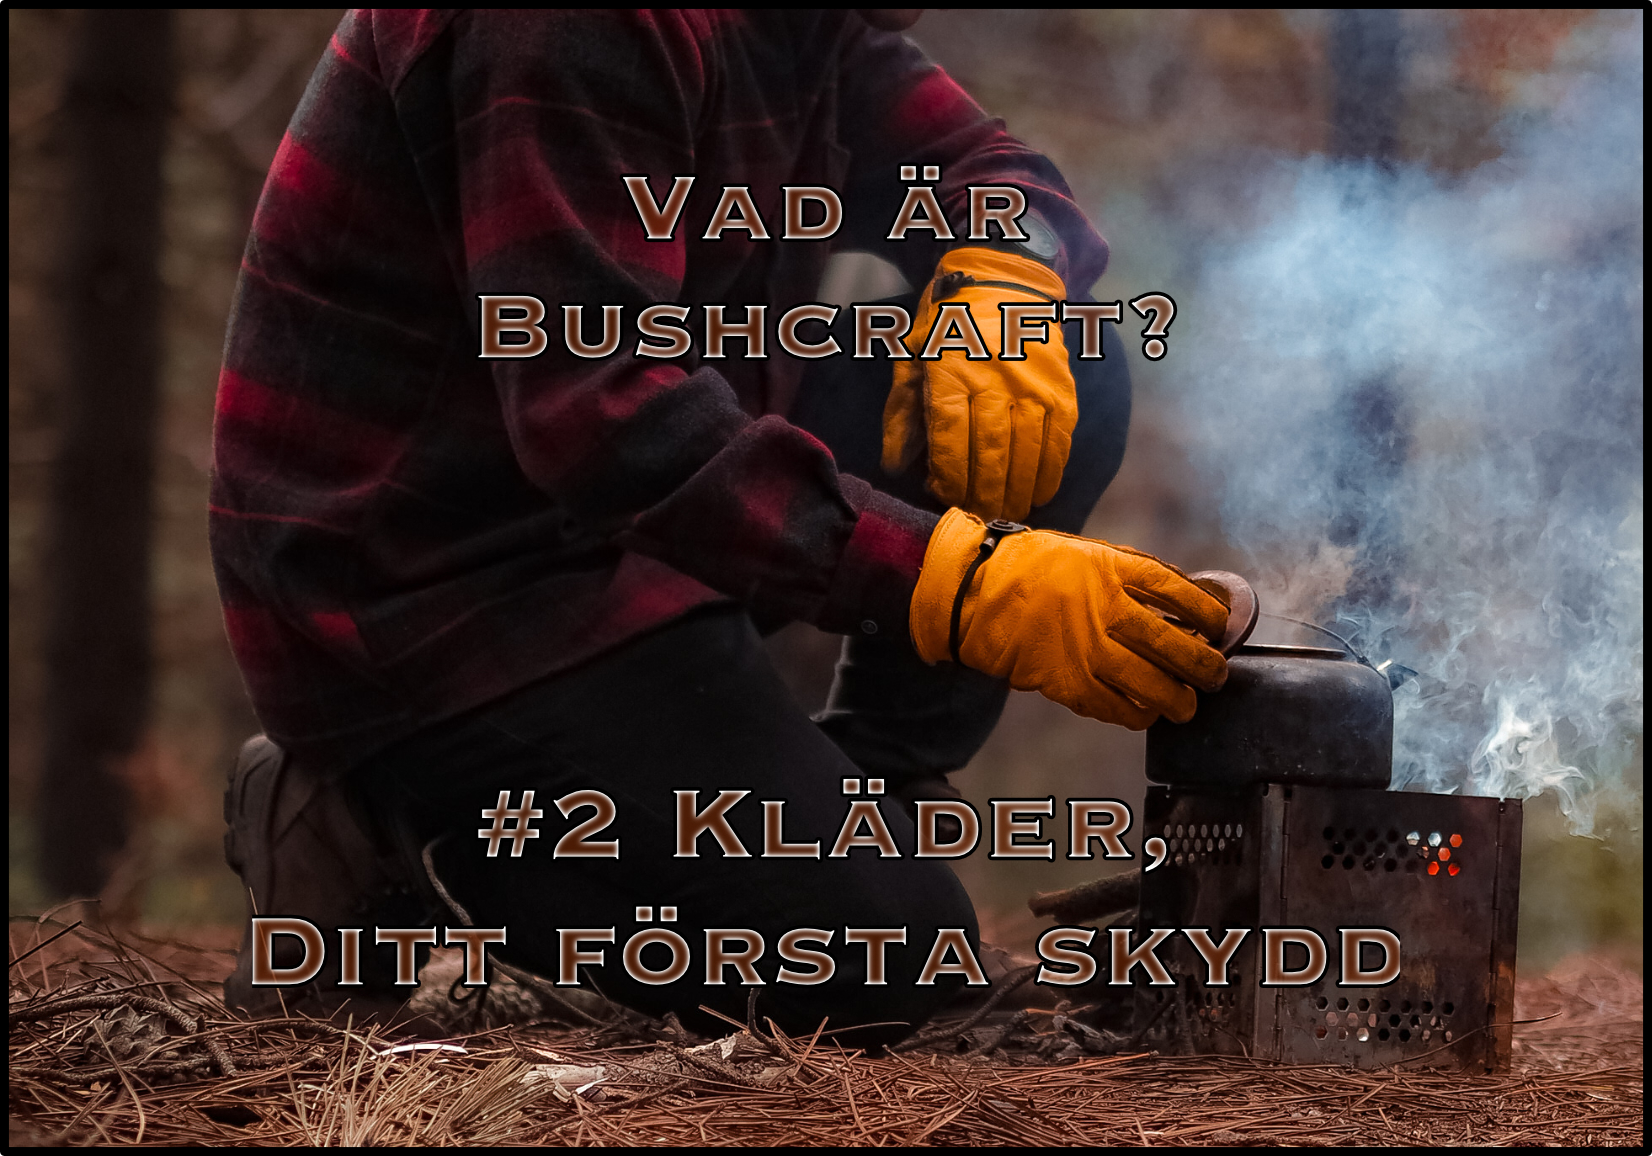 Vad är bushcraft? #2 Kläder, Ditt första skydd i kalla väder